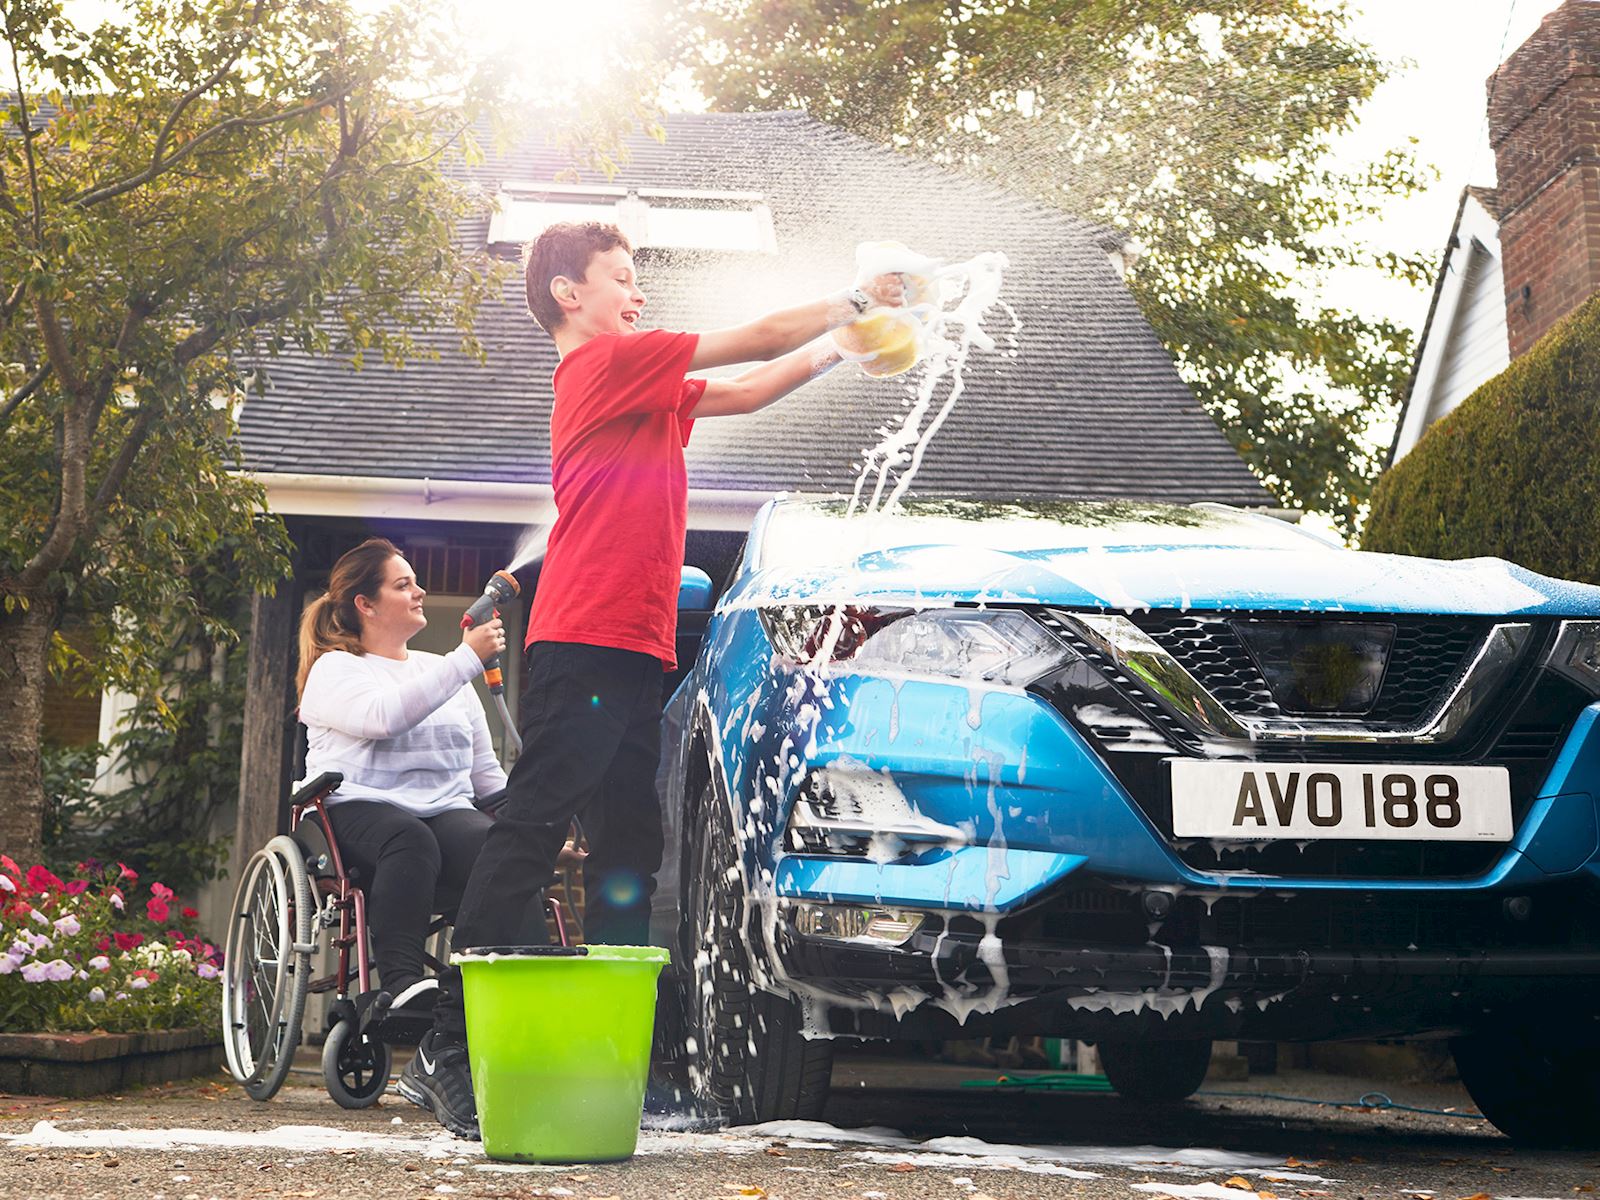 A lady with a boy washing the car